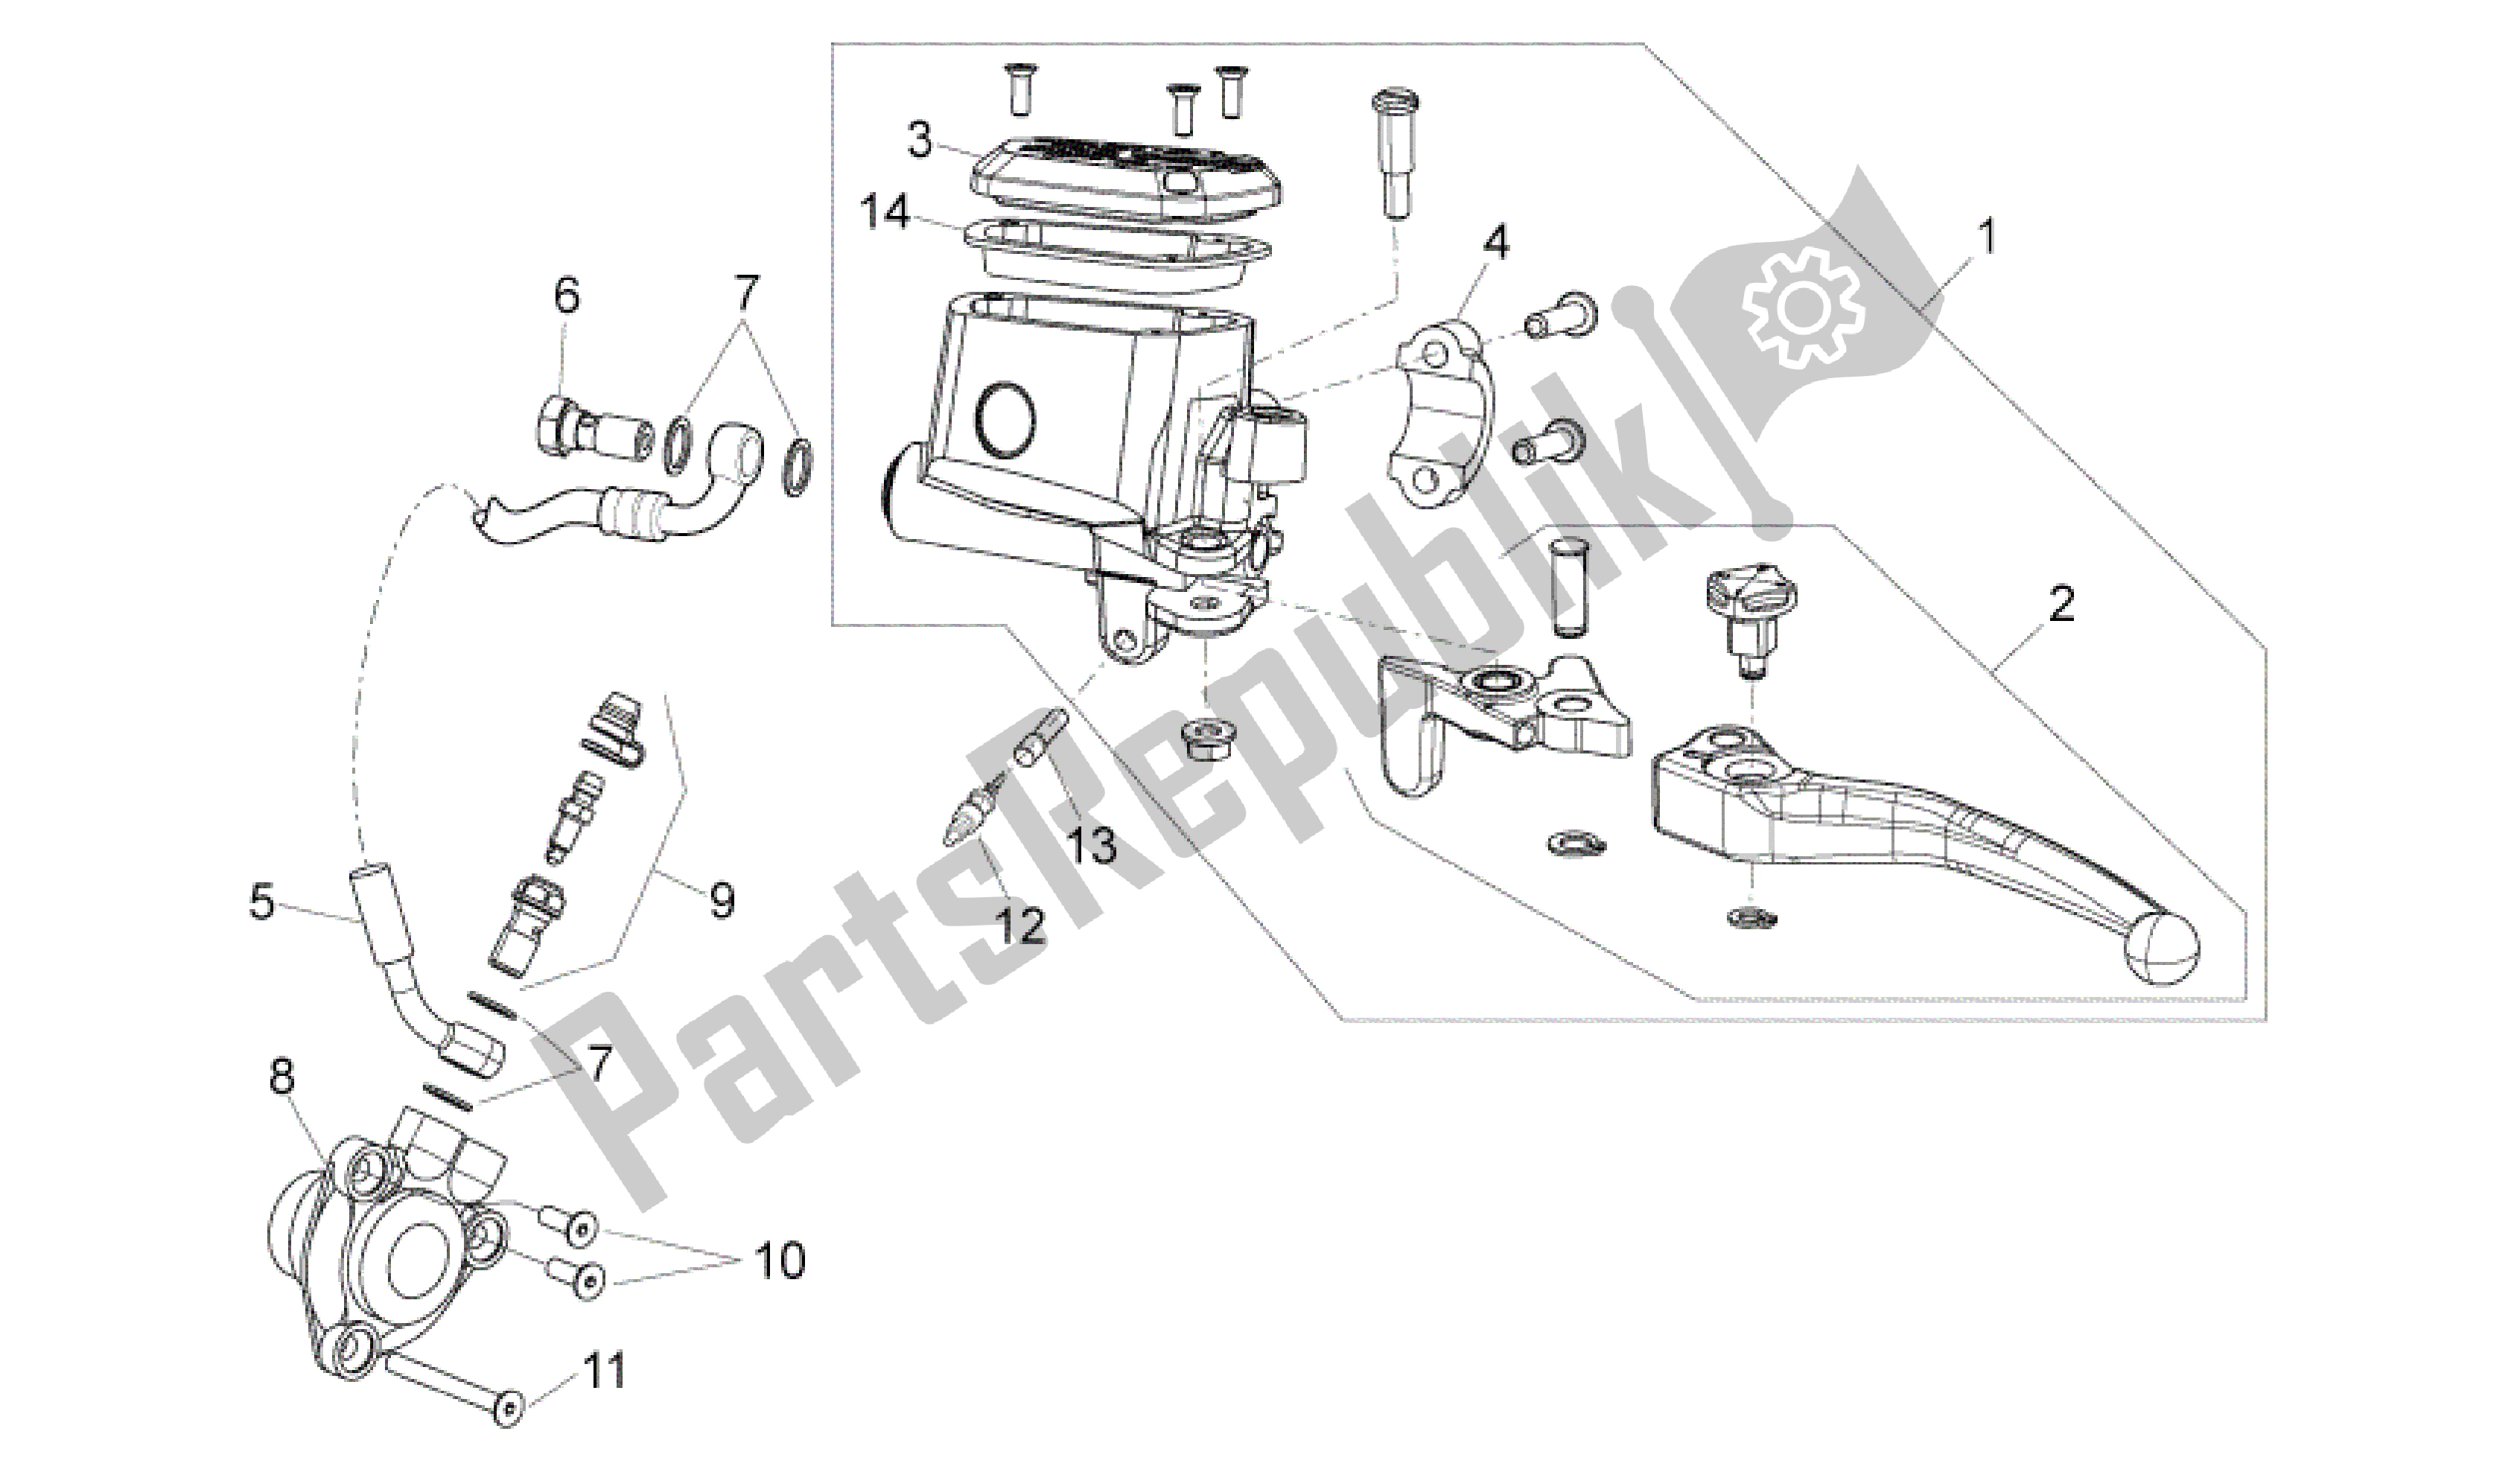 All parts for the Clutch Pump of the Aprilia Dorsoduro 750 2008 - 2011